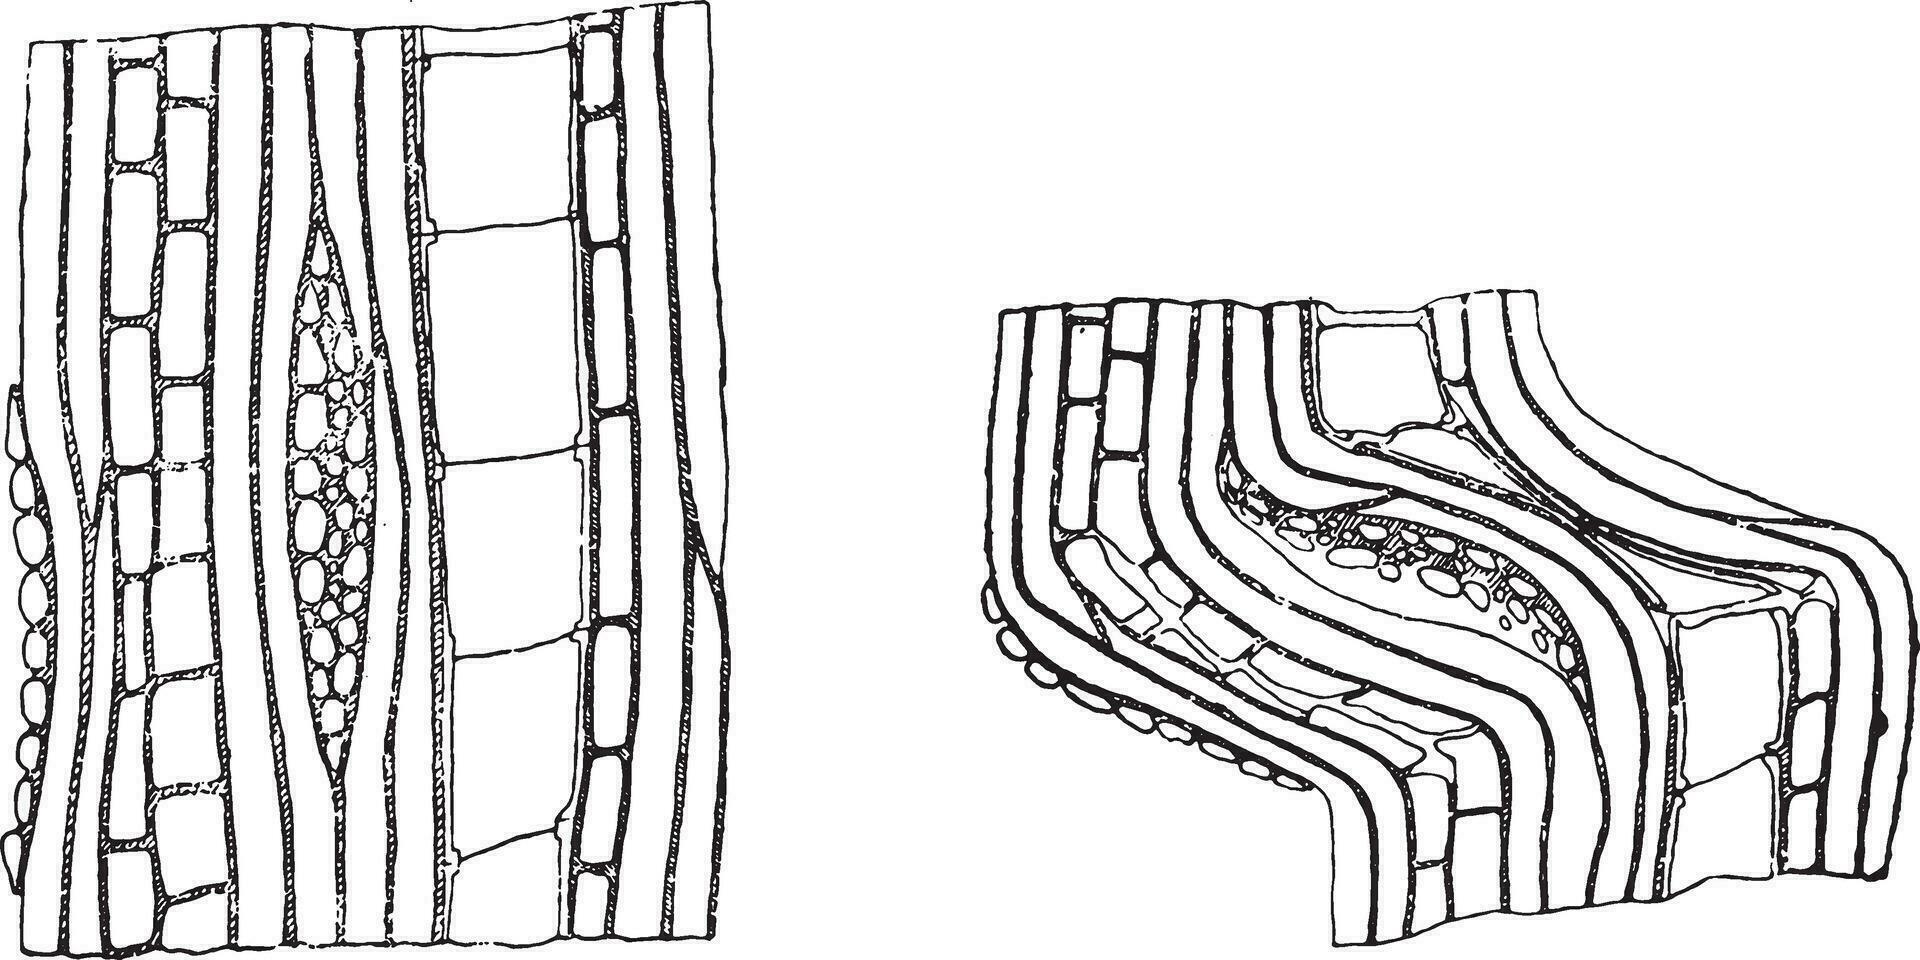 esquema de el rotura de un muestra por compresión paralelo a el fibras, Clásico grabado. vector